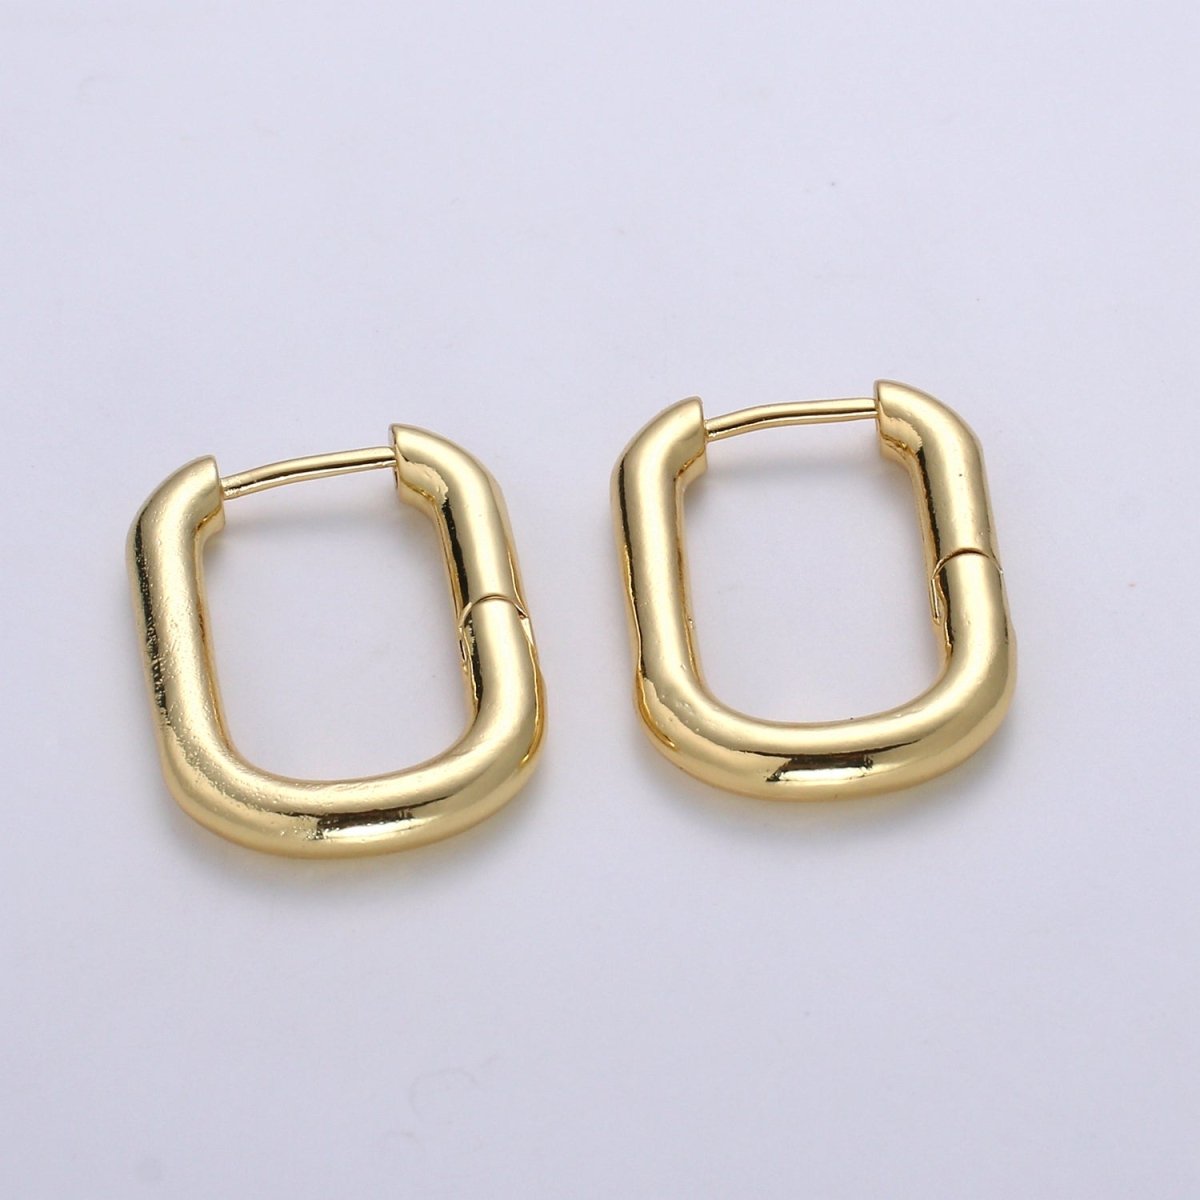 Square Hoop Earrings, U-Shape Gold Hoops, 14k Gold Filled Huggie Earrings, Geometric Huggies, Oval Hoop earrings, Mini hoops Q-087 P-037 - DLUXCA